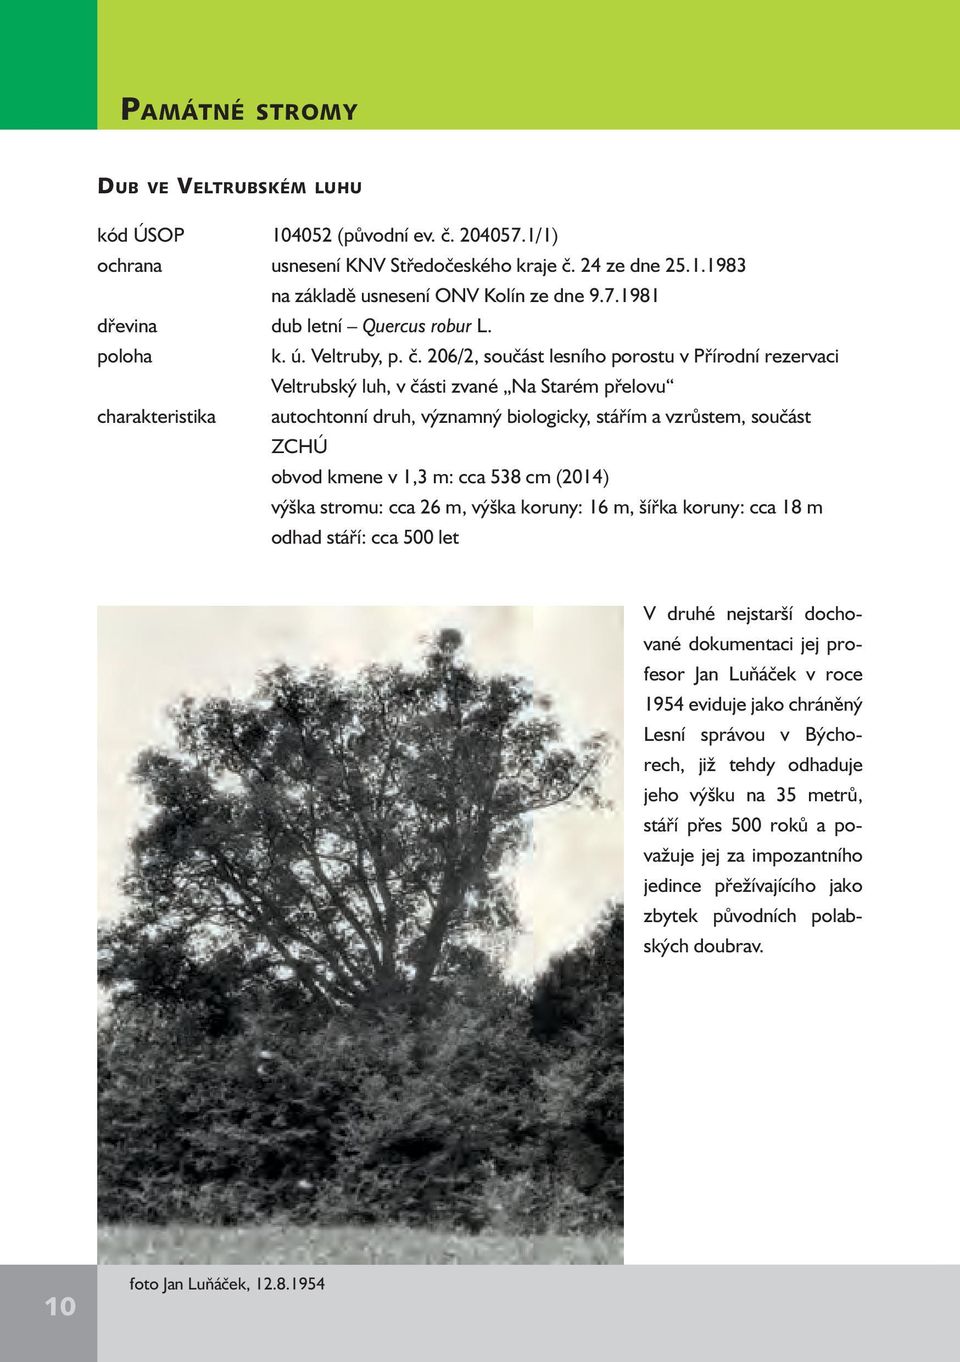 206/2, součást lesního porostu v Přírodní rezervaci Veltrubský luh, v části zvané Na Starém přelovu charakteristika autochtonní druh, významný biologicky, stářím a vzrůstem, součást ZCHÚ obvod kmene